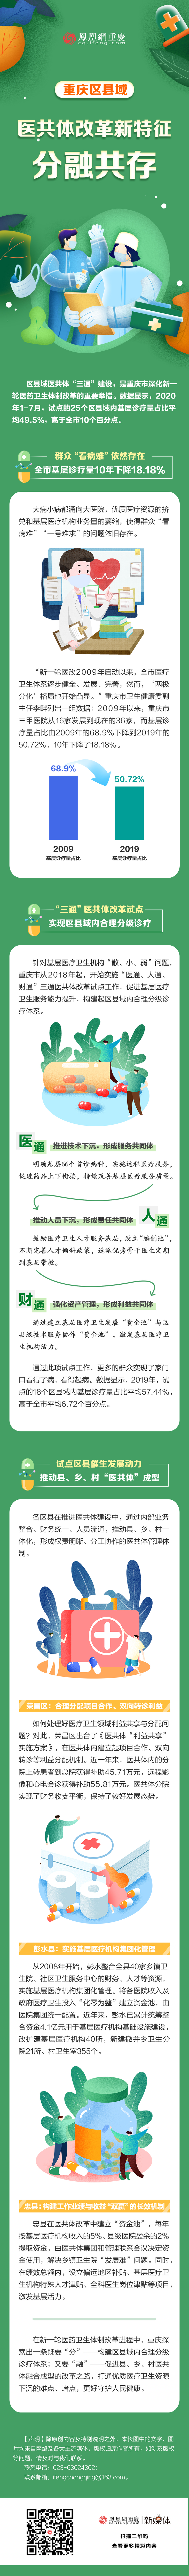 一图读懂 | 重庆区县域医共体改革新特征：分融共存